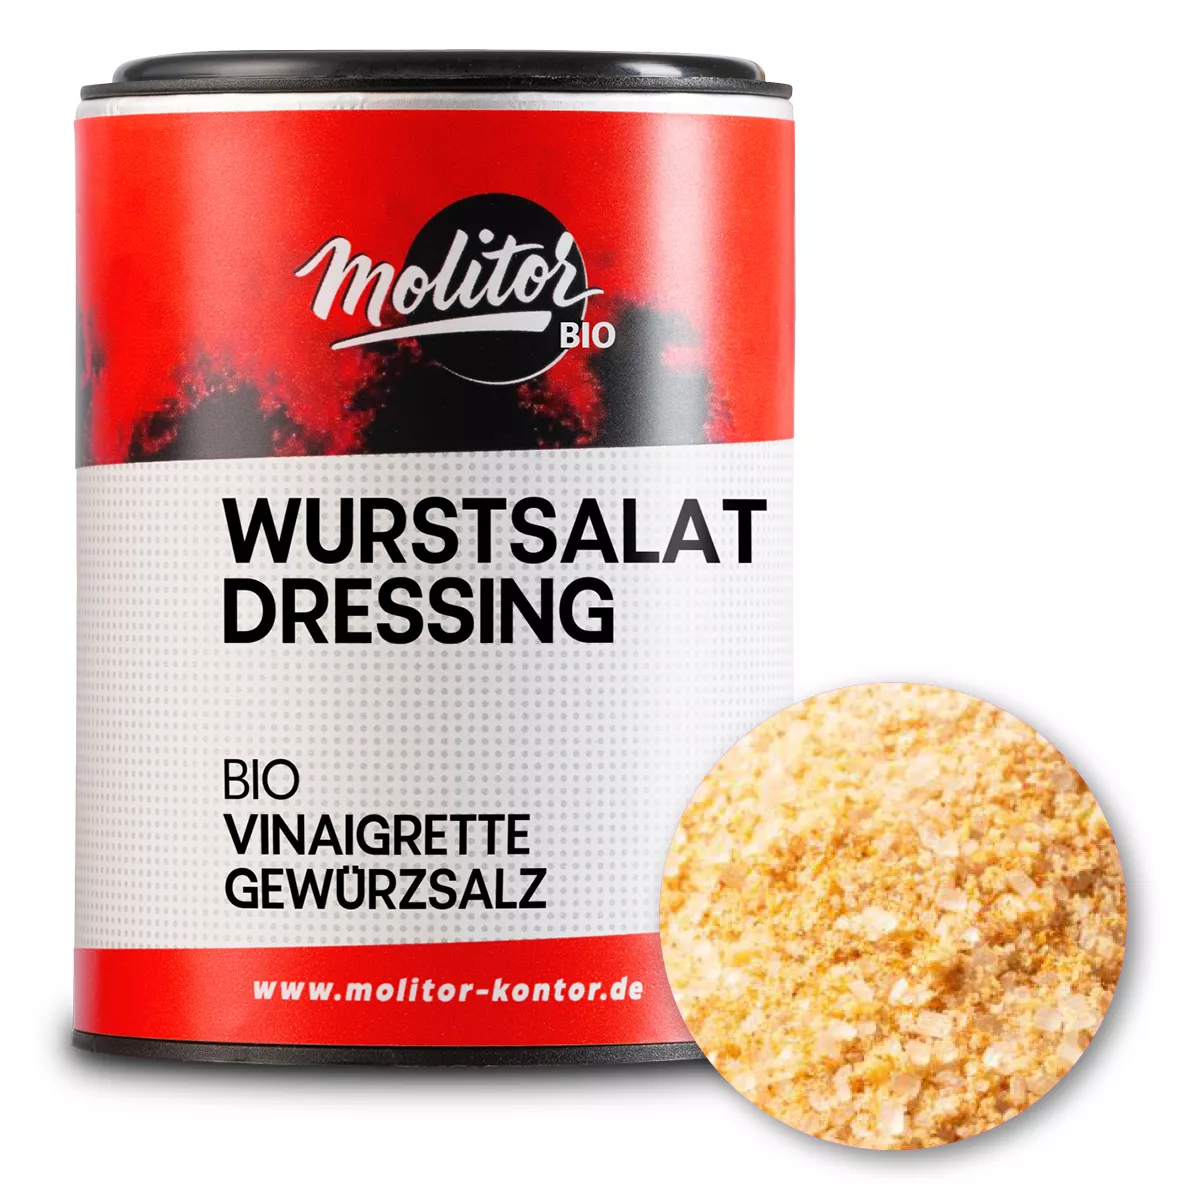 Bio Wurstsalat Dressing | Wurstsalat Würzmischung